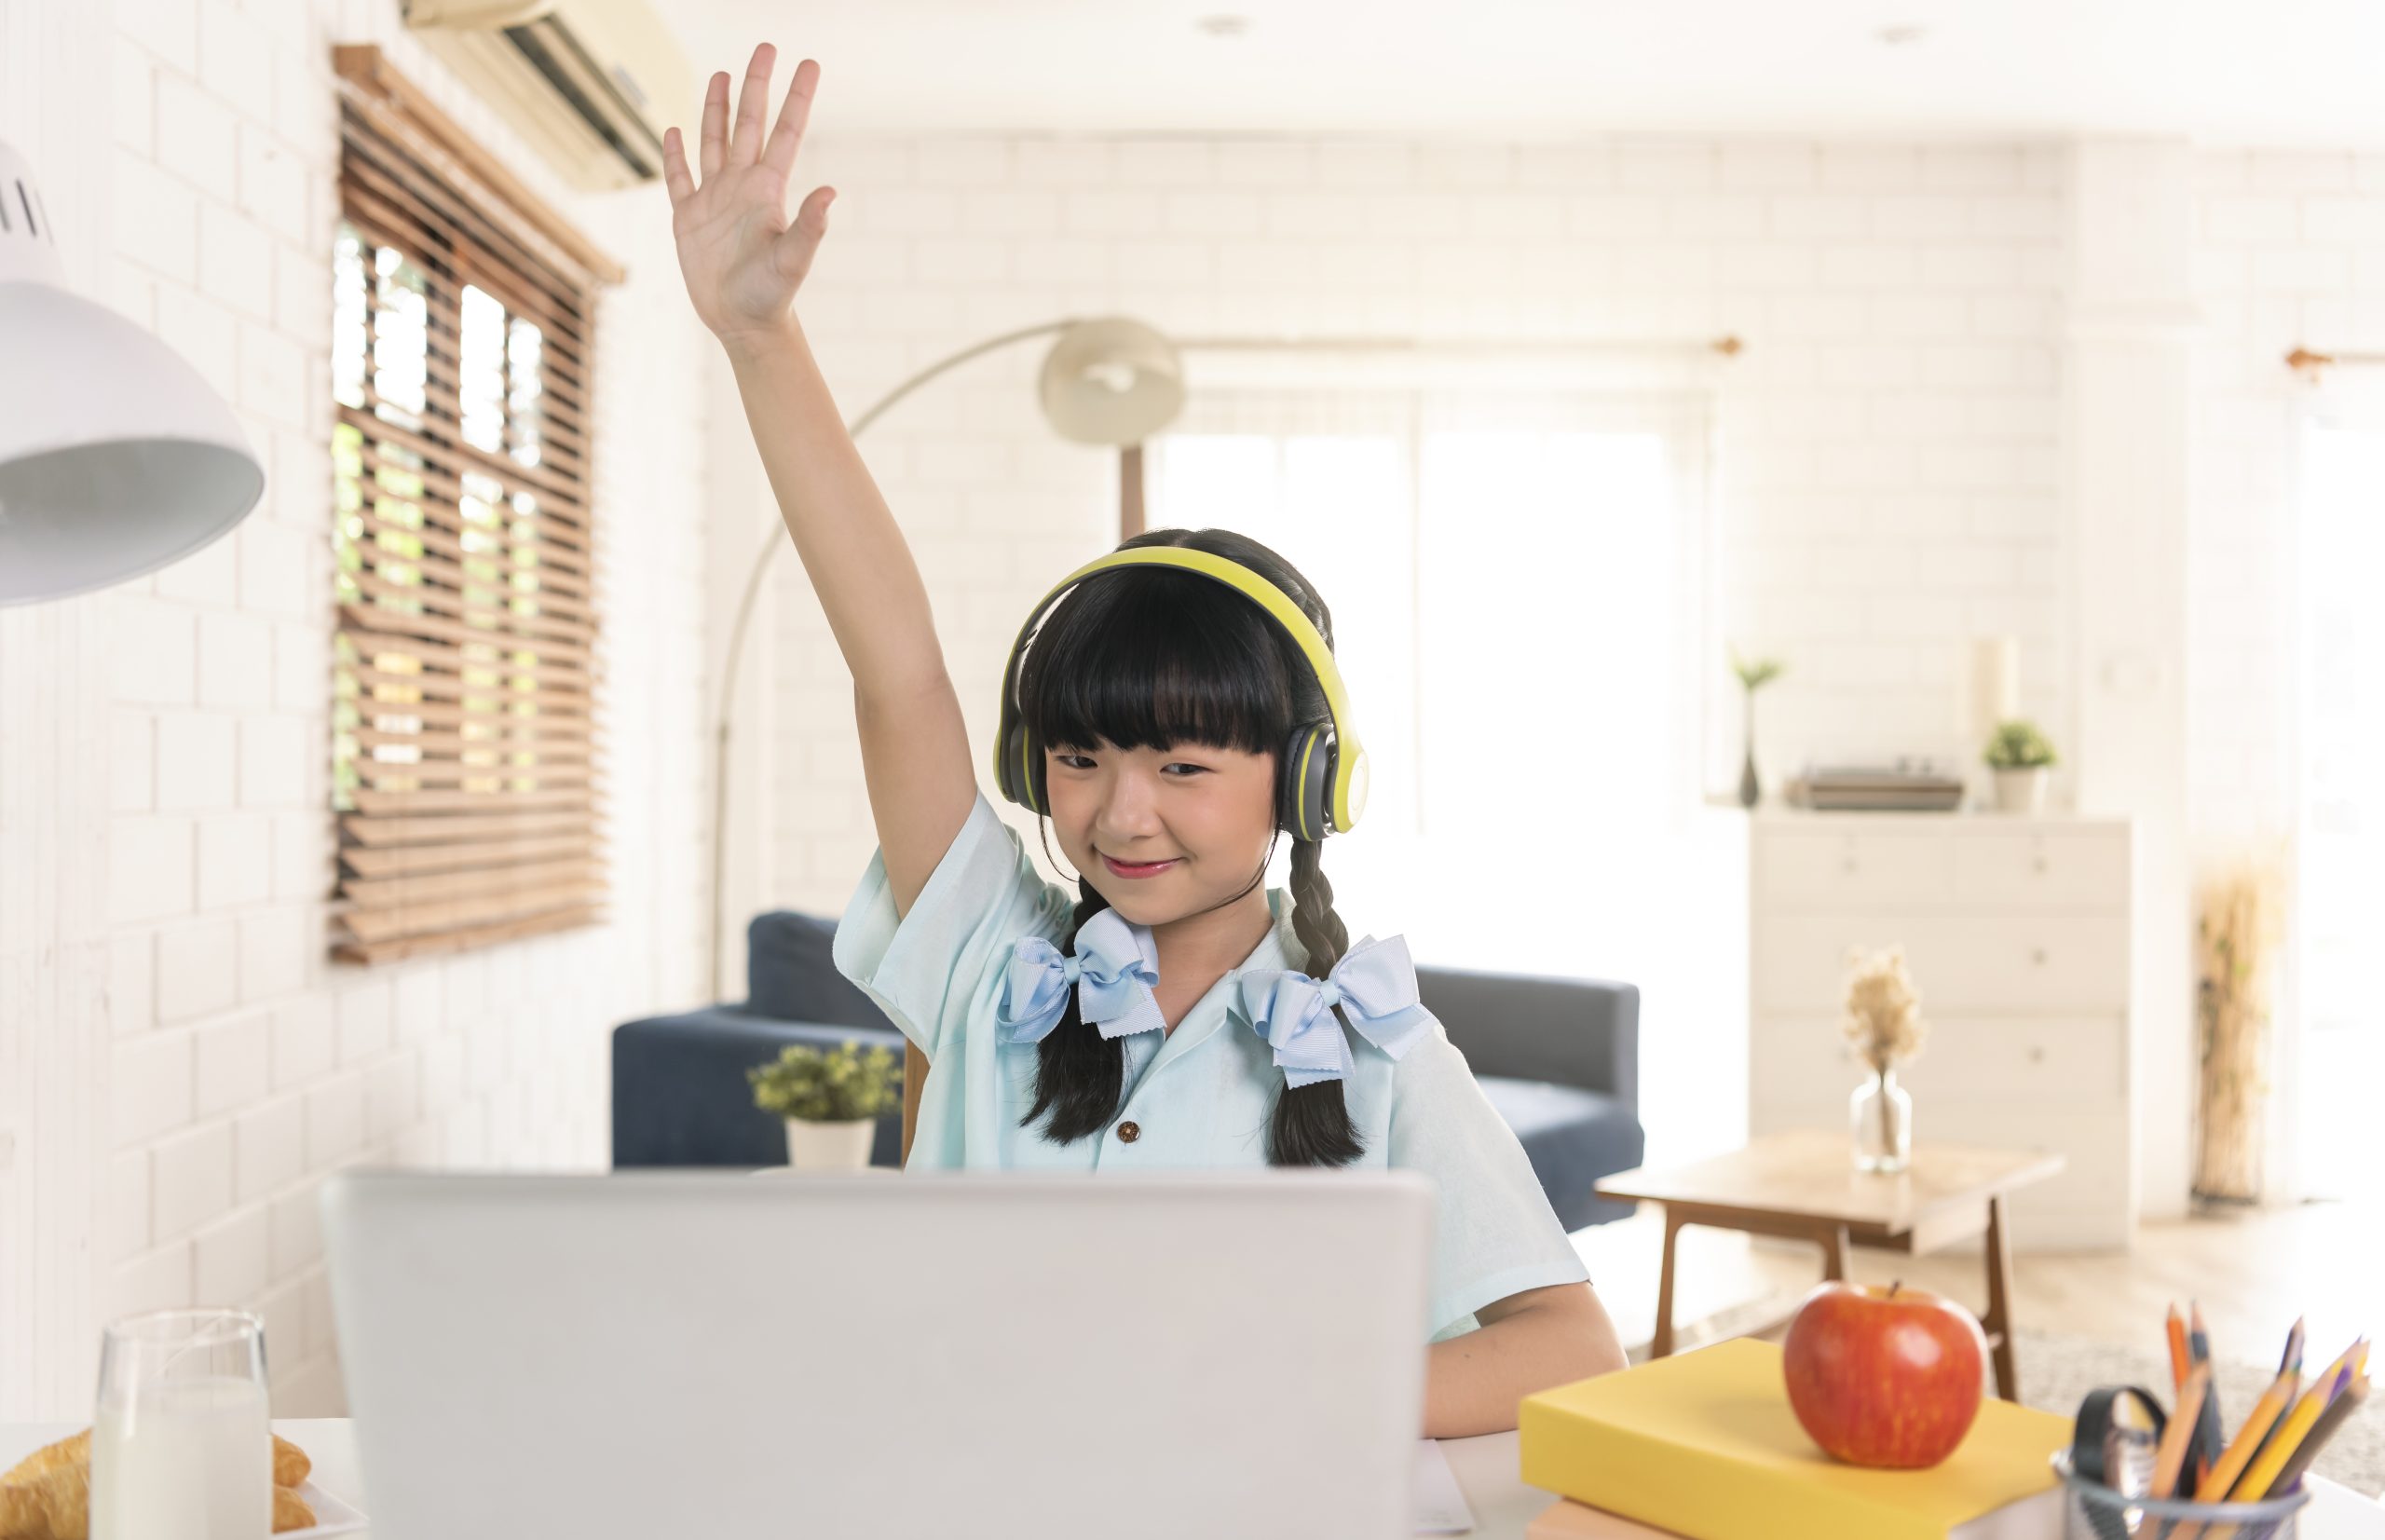 asian girl using máy vi tính computer online study homeschooling during trang chính quarantine scaled